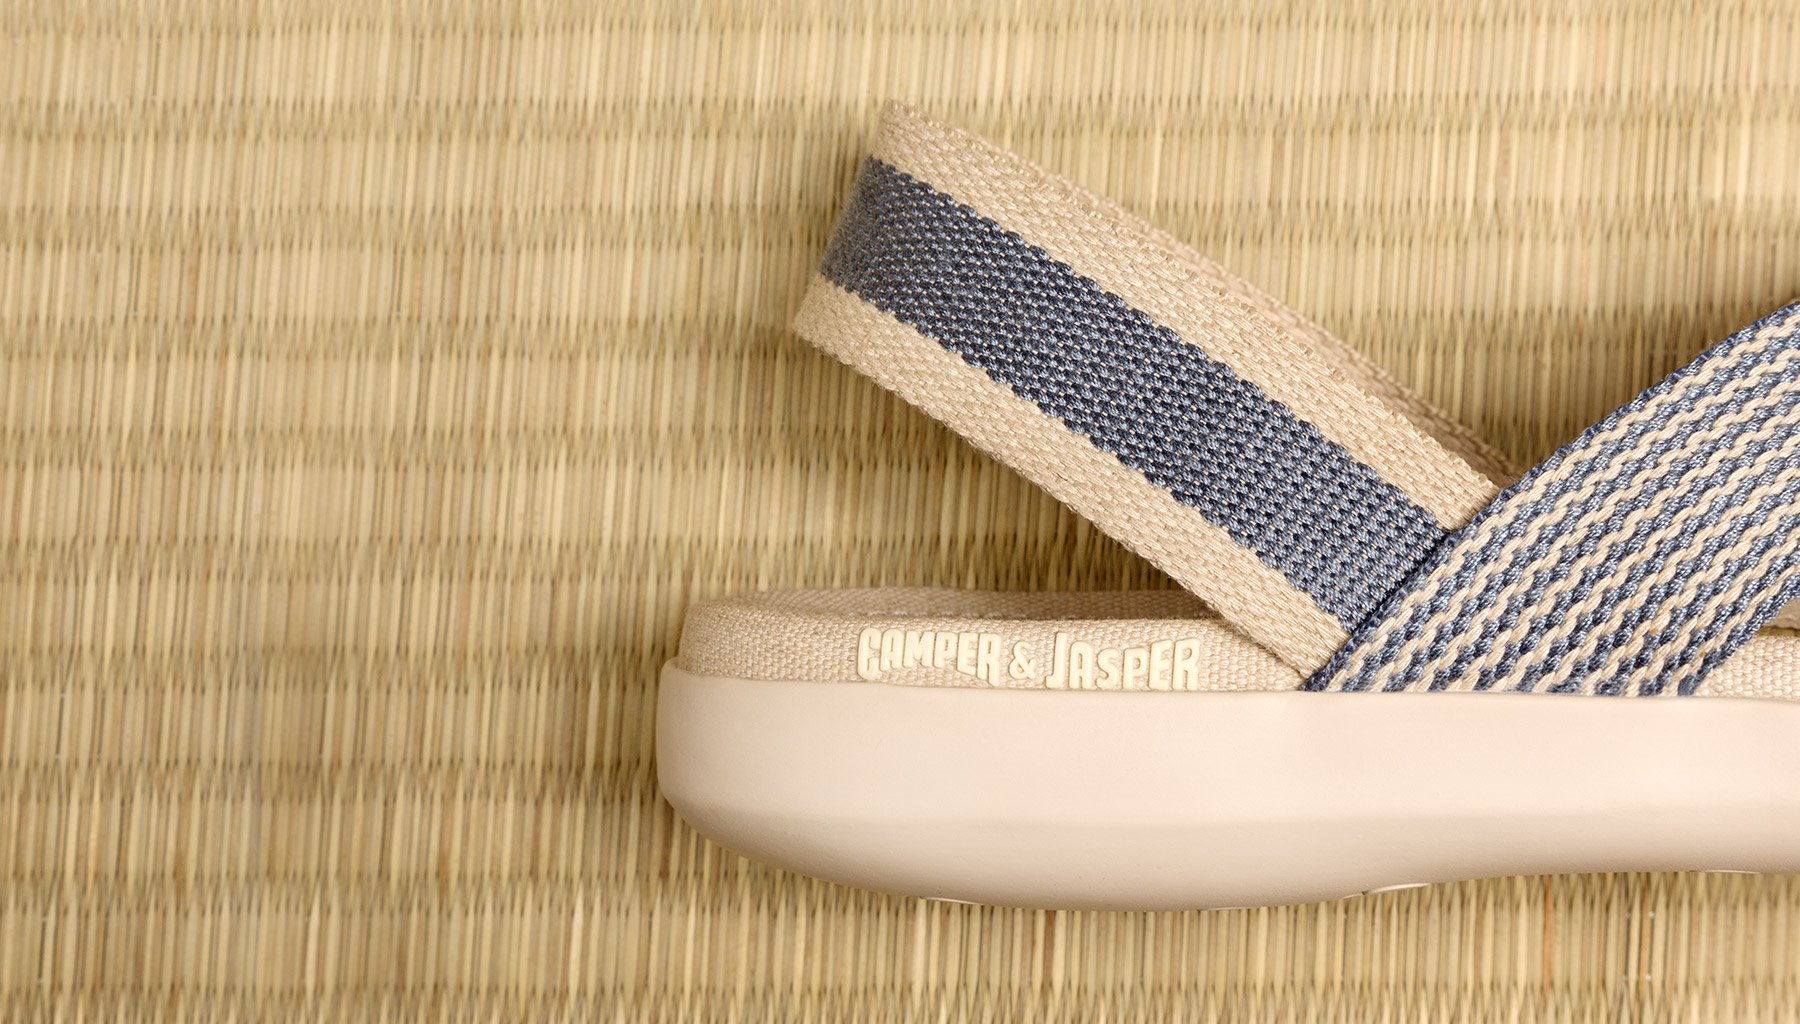 Sandalias con plantilla de tatami diseñadas por Jasper Morrison para Camper. El tatami ha sido el material escogido por Jasper Morrison para la última de sus colaboraciones con Camper.